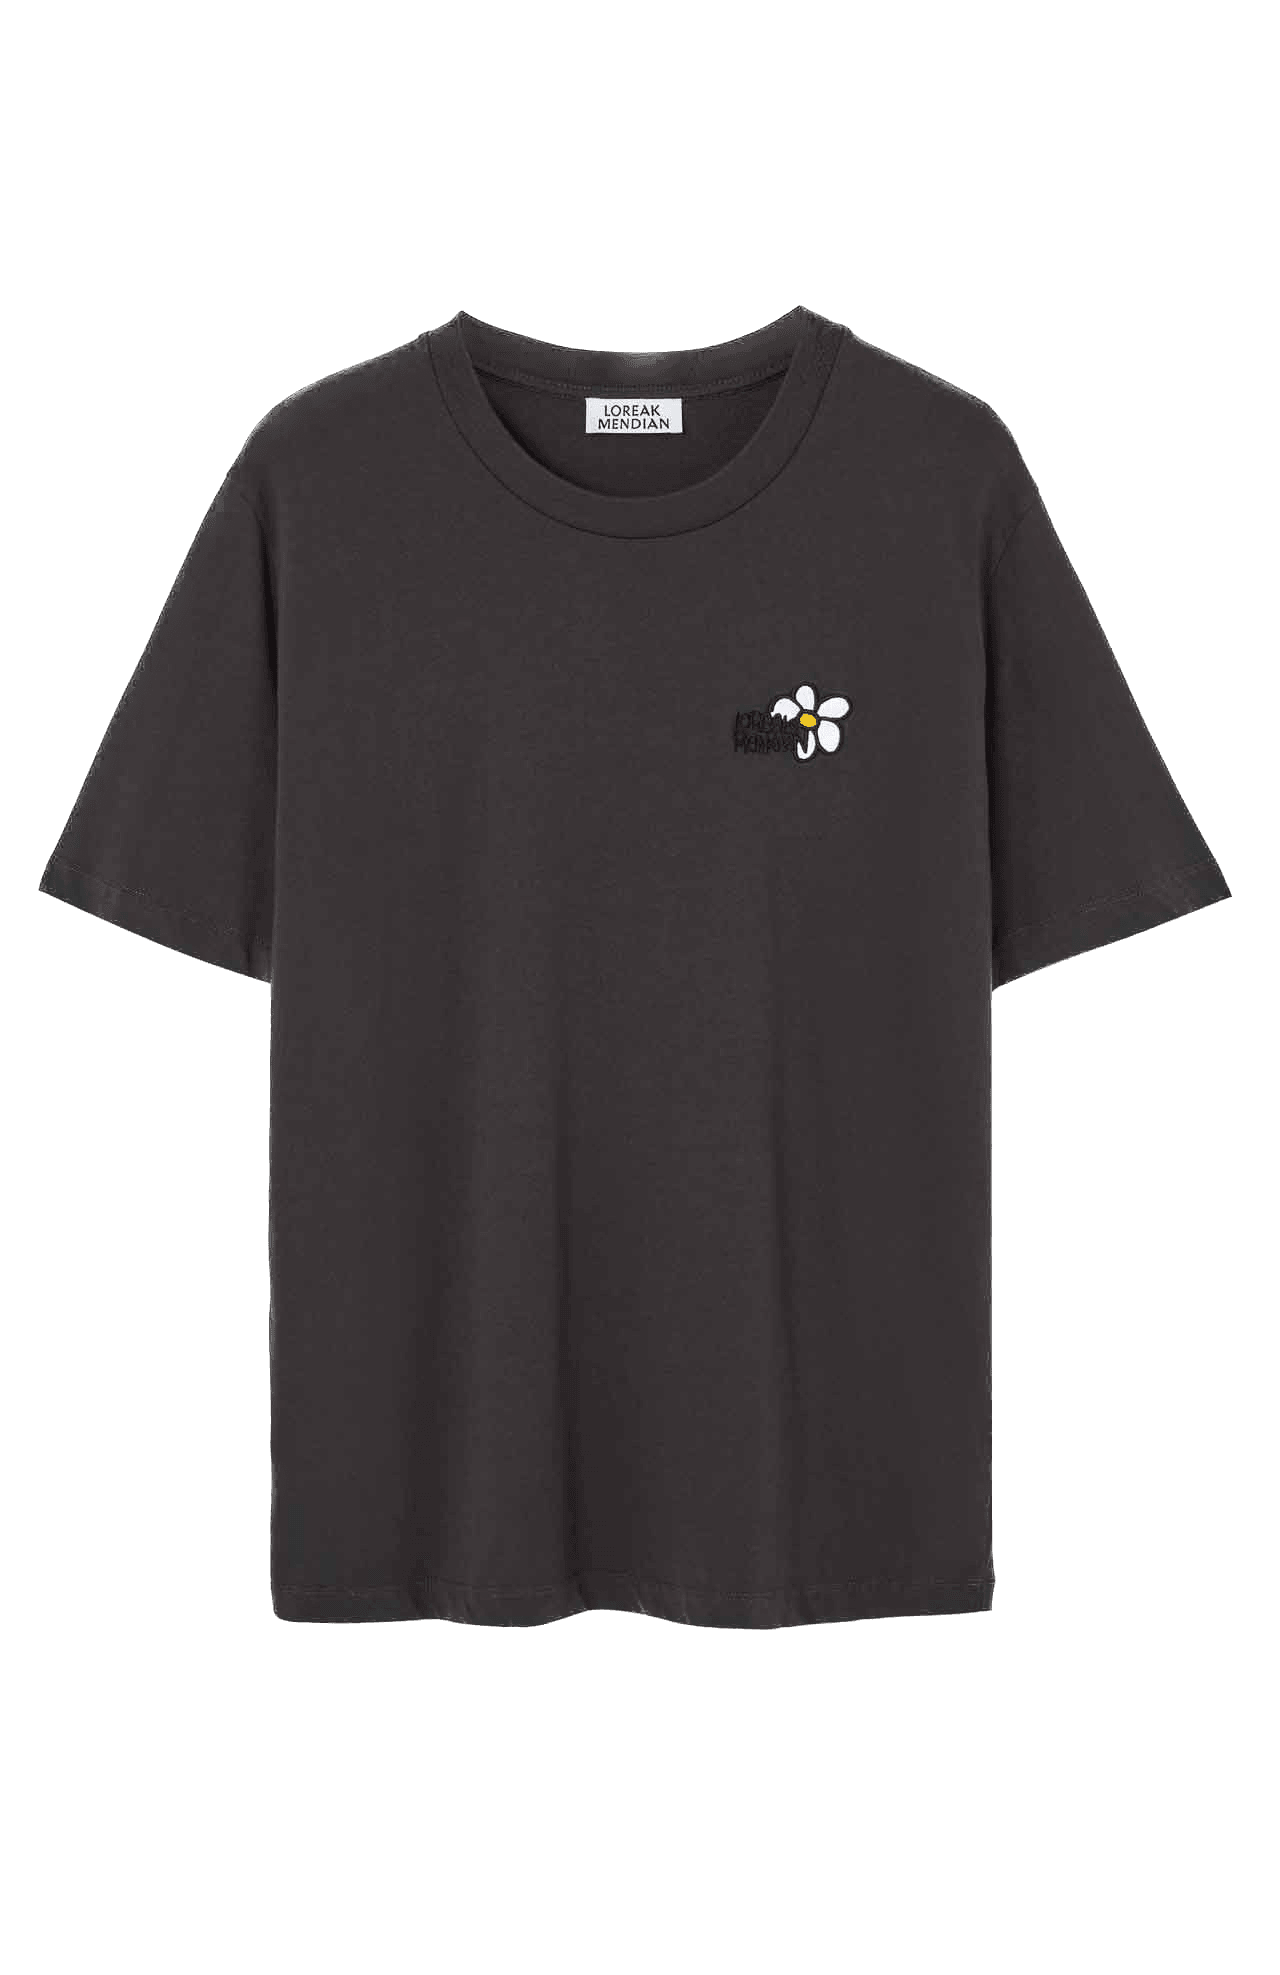 Camiseta Loreak Mendian TS Marga Fine Dark Chocolate - ECRU